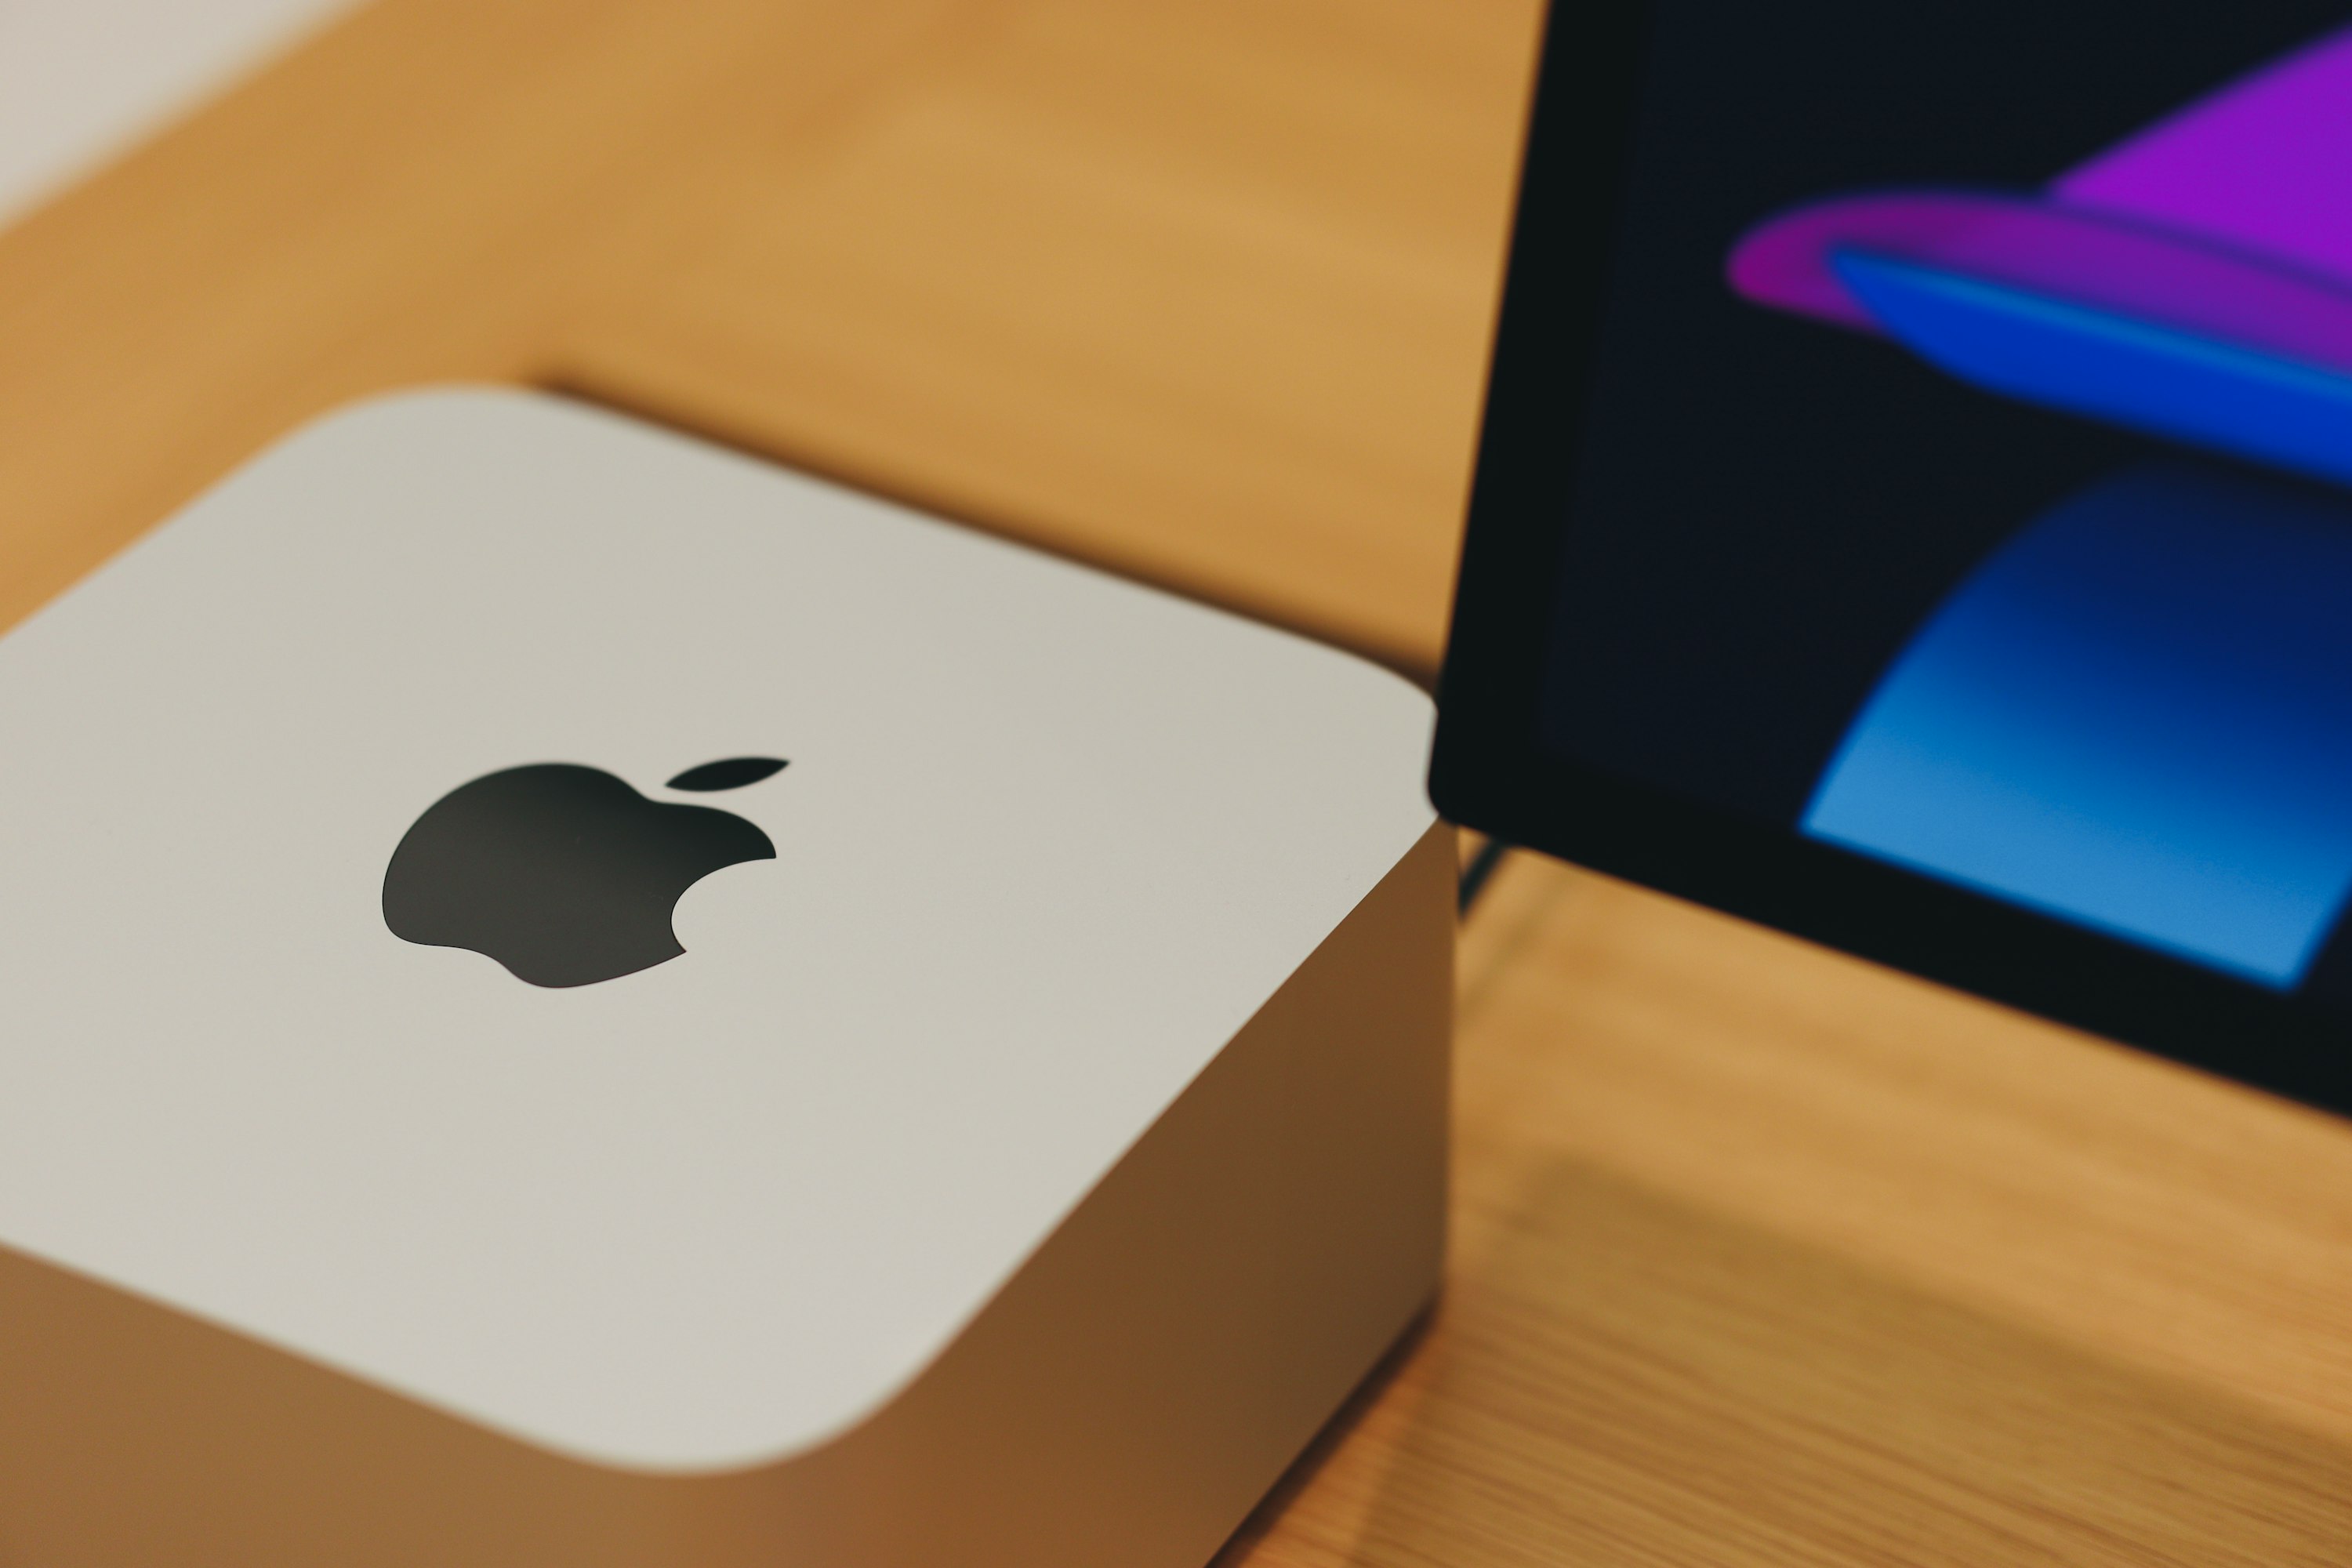 Mac Studio sobre uma superfície de madeira e à esquerda do ecrã de um iMac com apenas o canto inferior esquerdo visível.